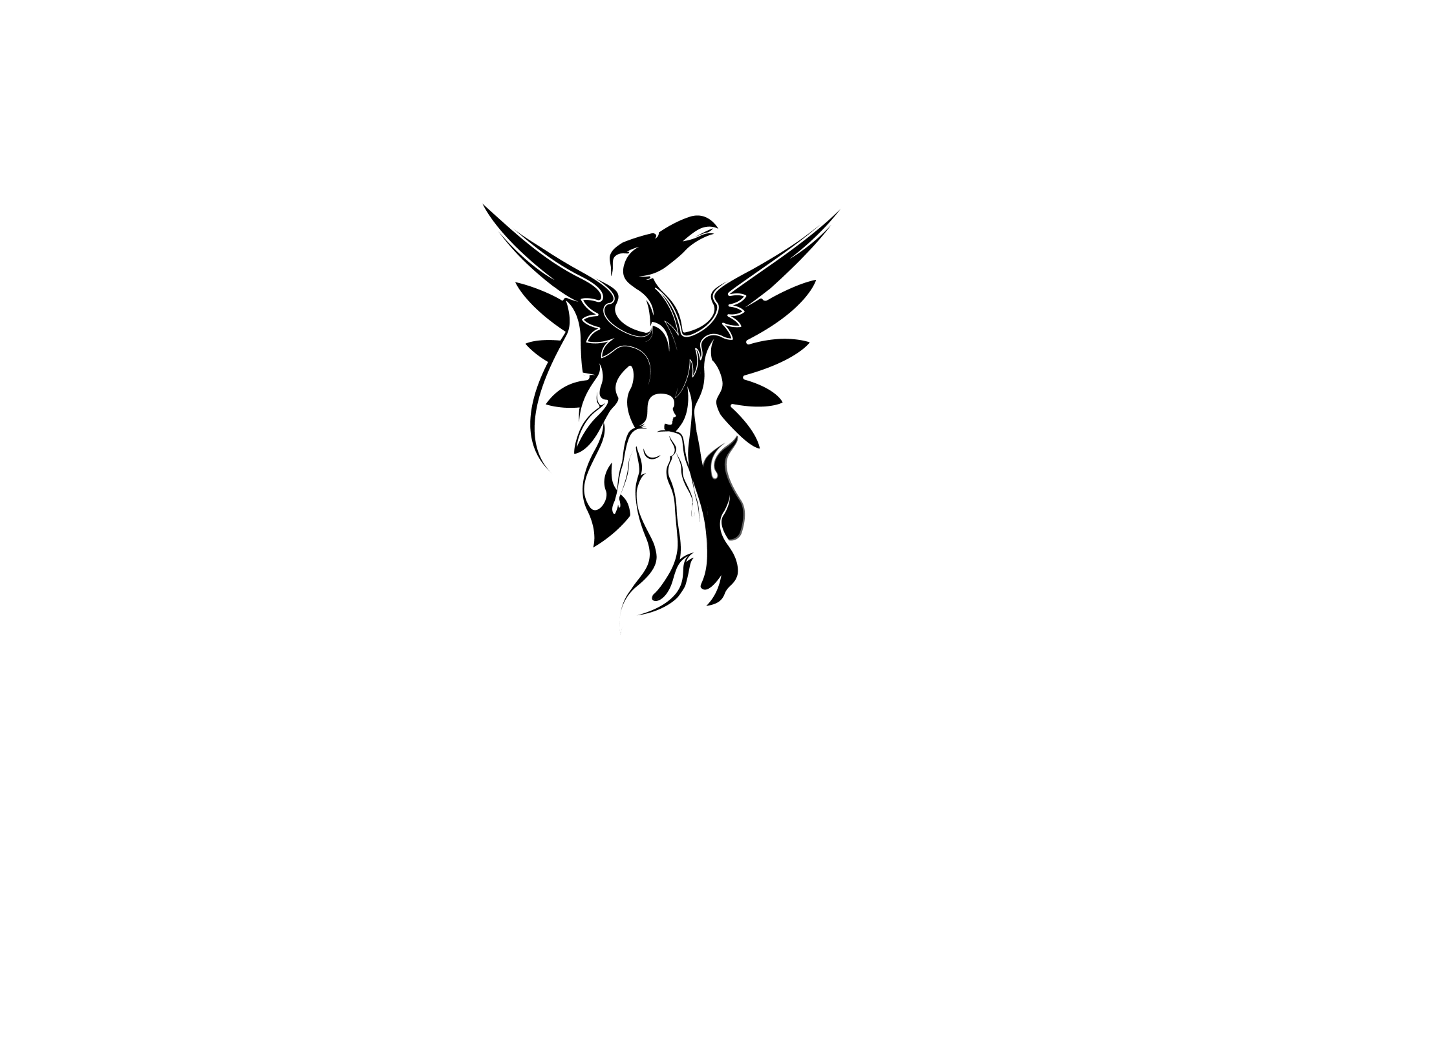 Logo Colegio para adultos Renacer